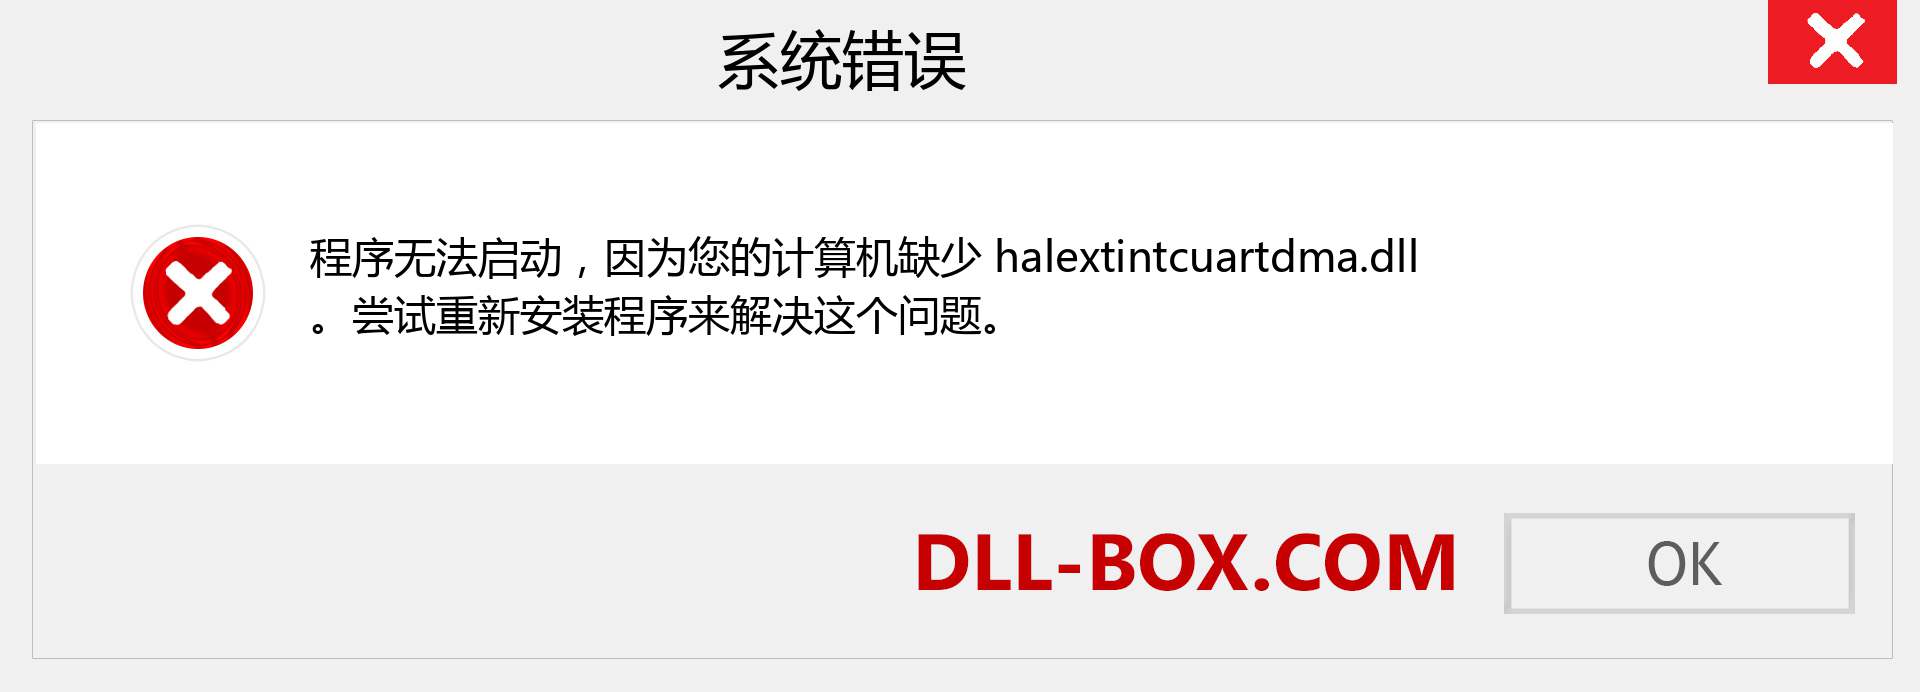 halextintcuartdma.dll 文件丢失？。 适用于 Windows 7、8、10 的下载 - 修复 Windows、照片、图像上的 halextintcuartdma dll 丢失错误